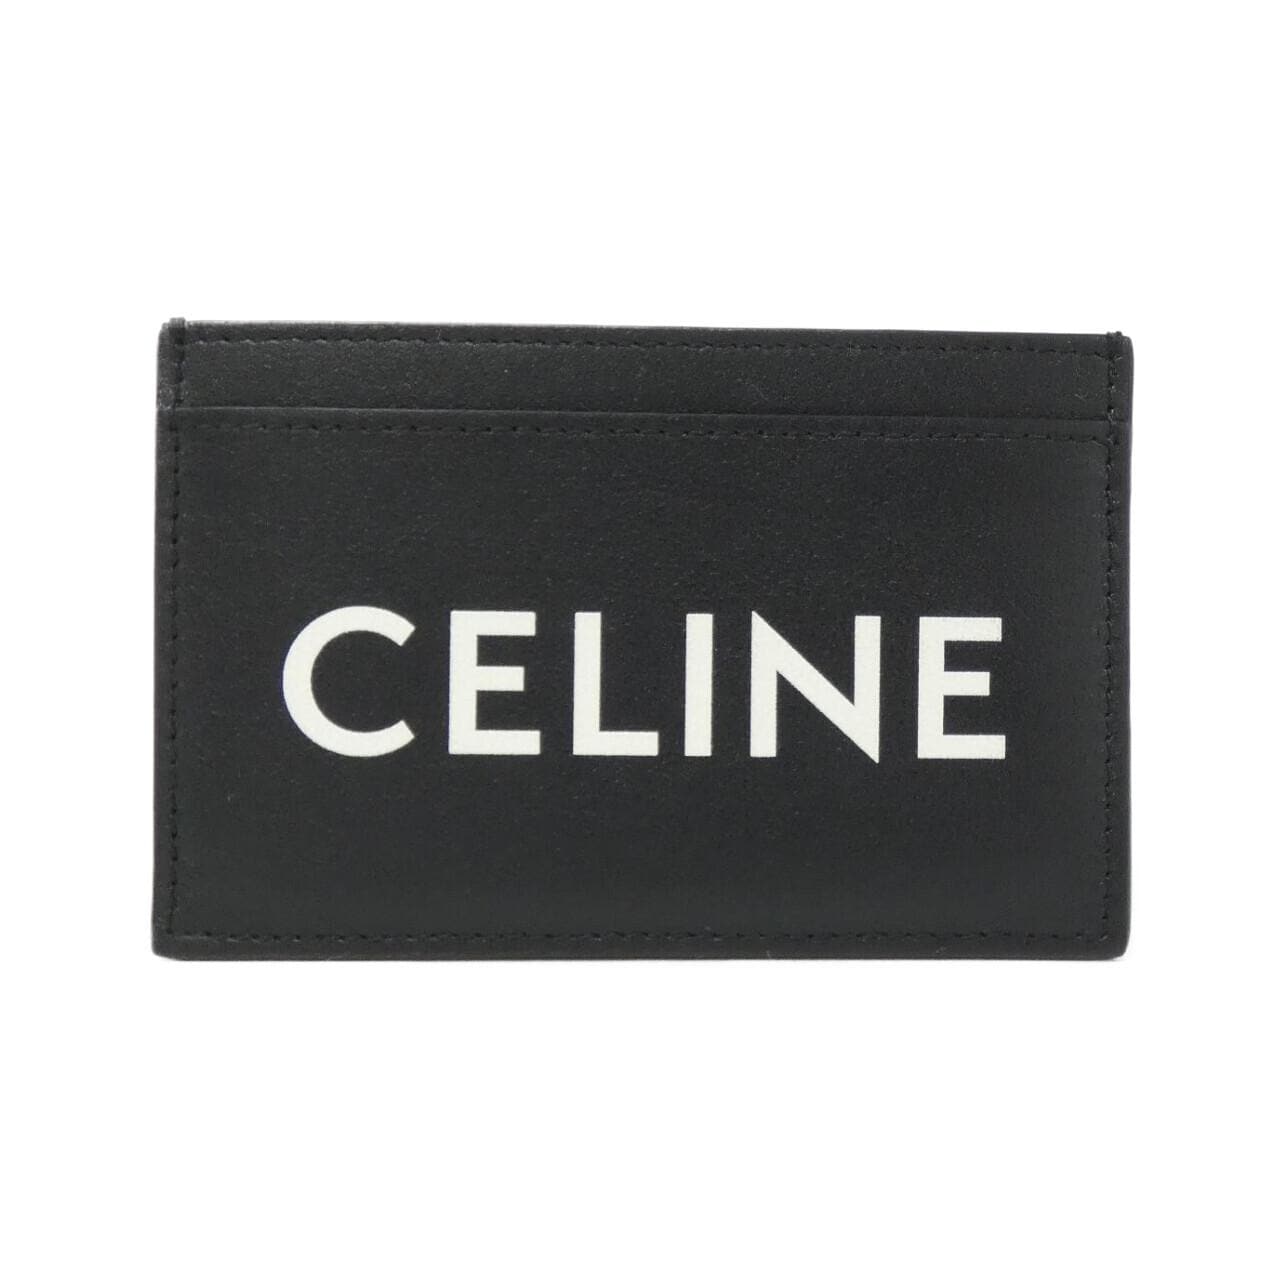 CELINE 10B703DMF 卡包